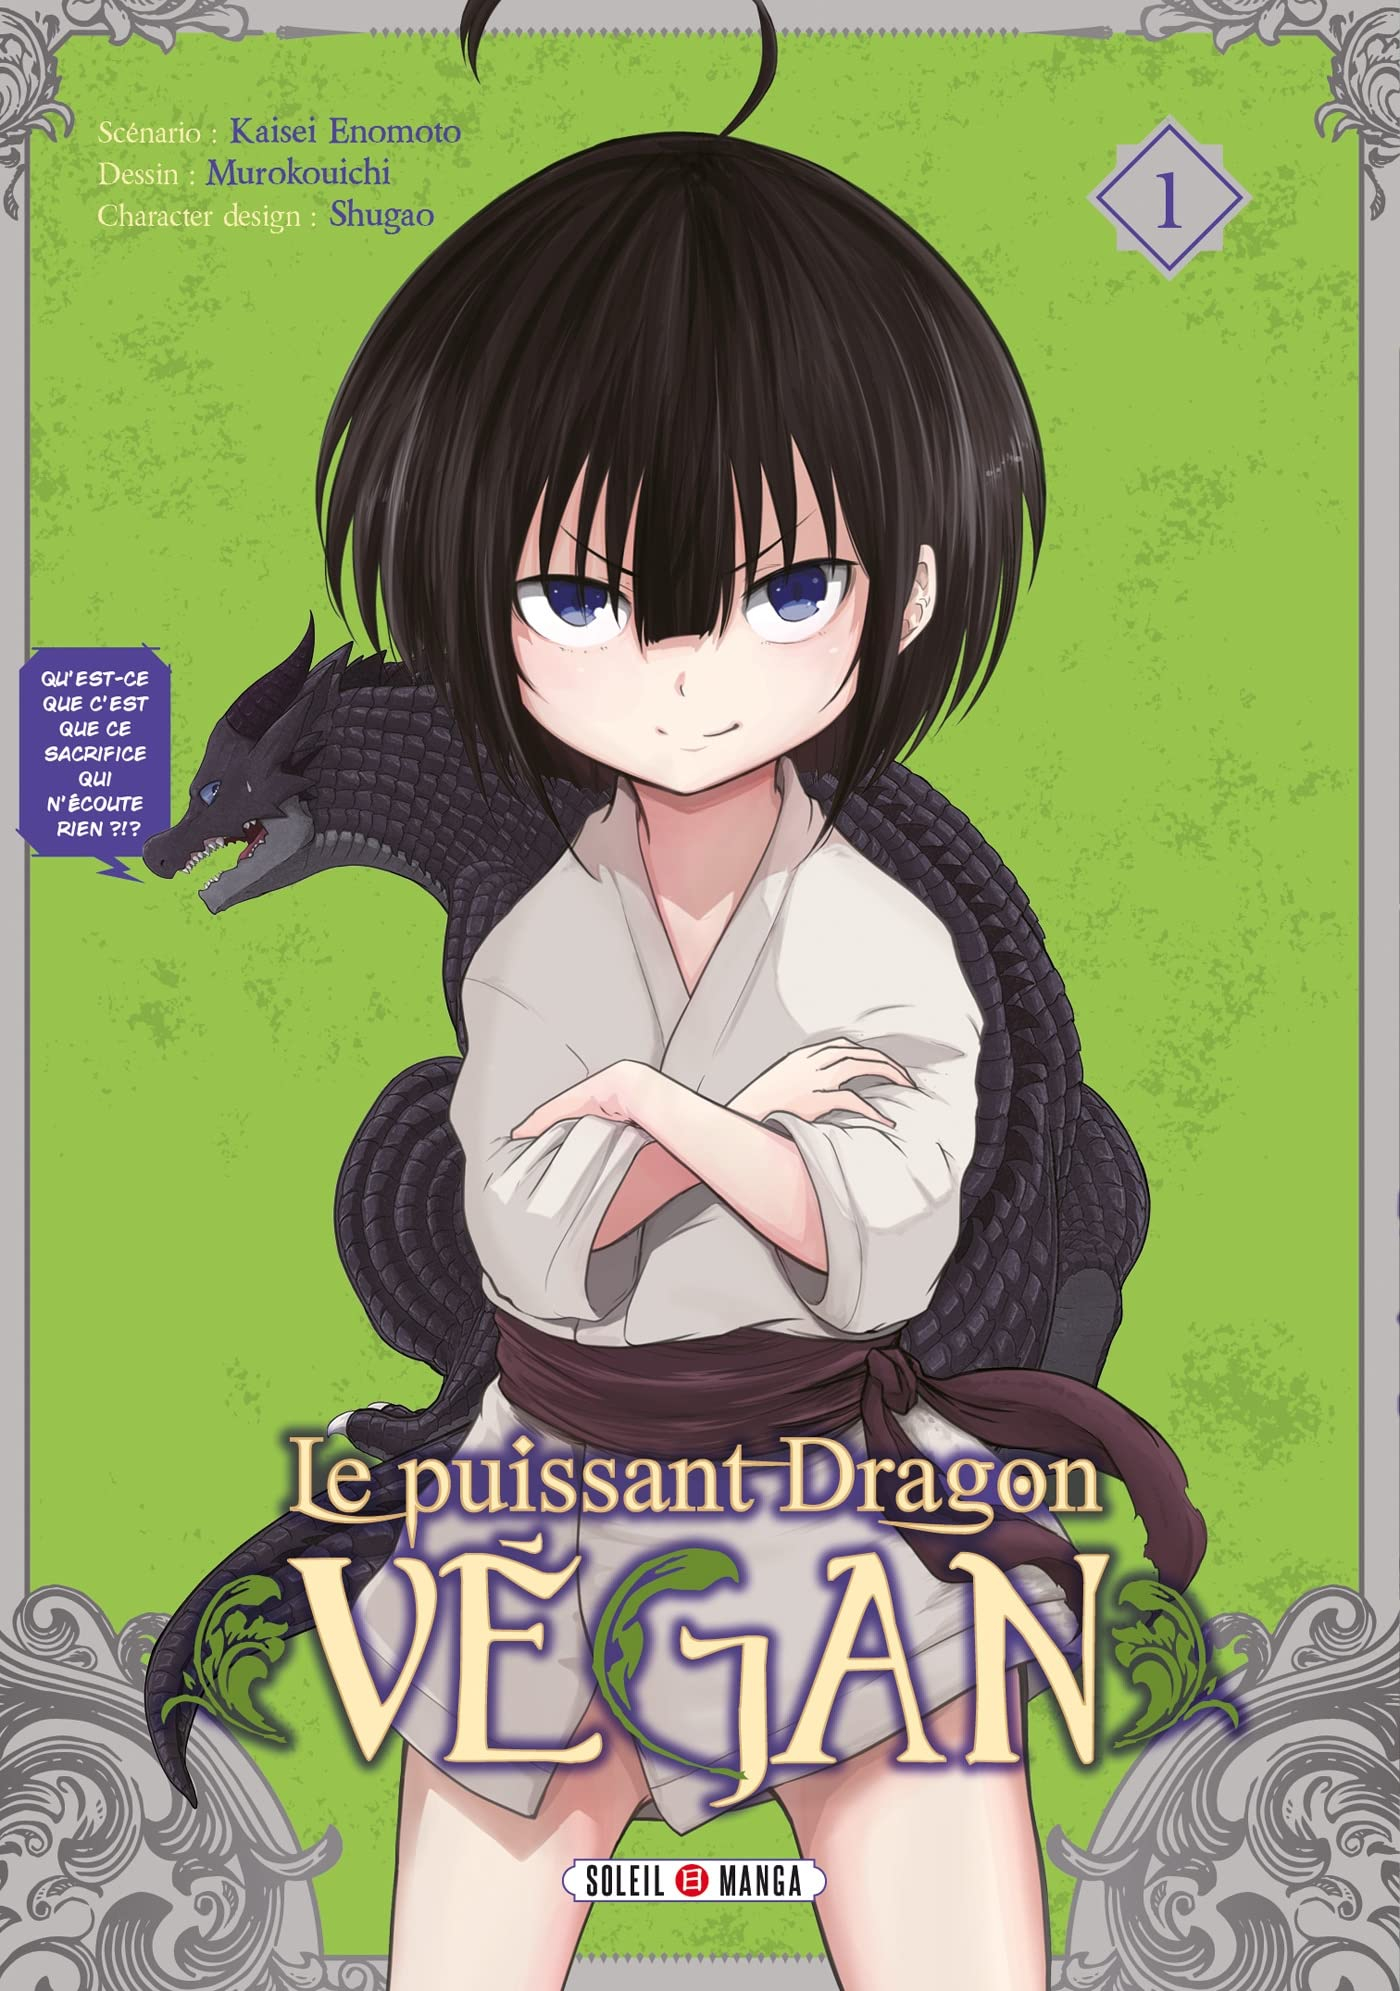 Le puissant dragon vegan. Vol. 1